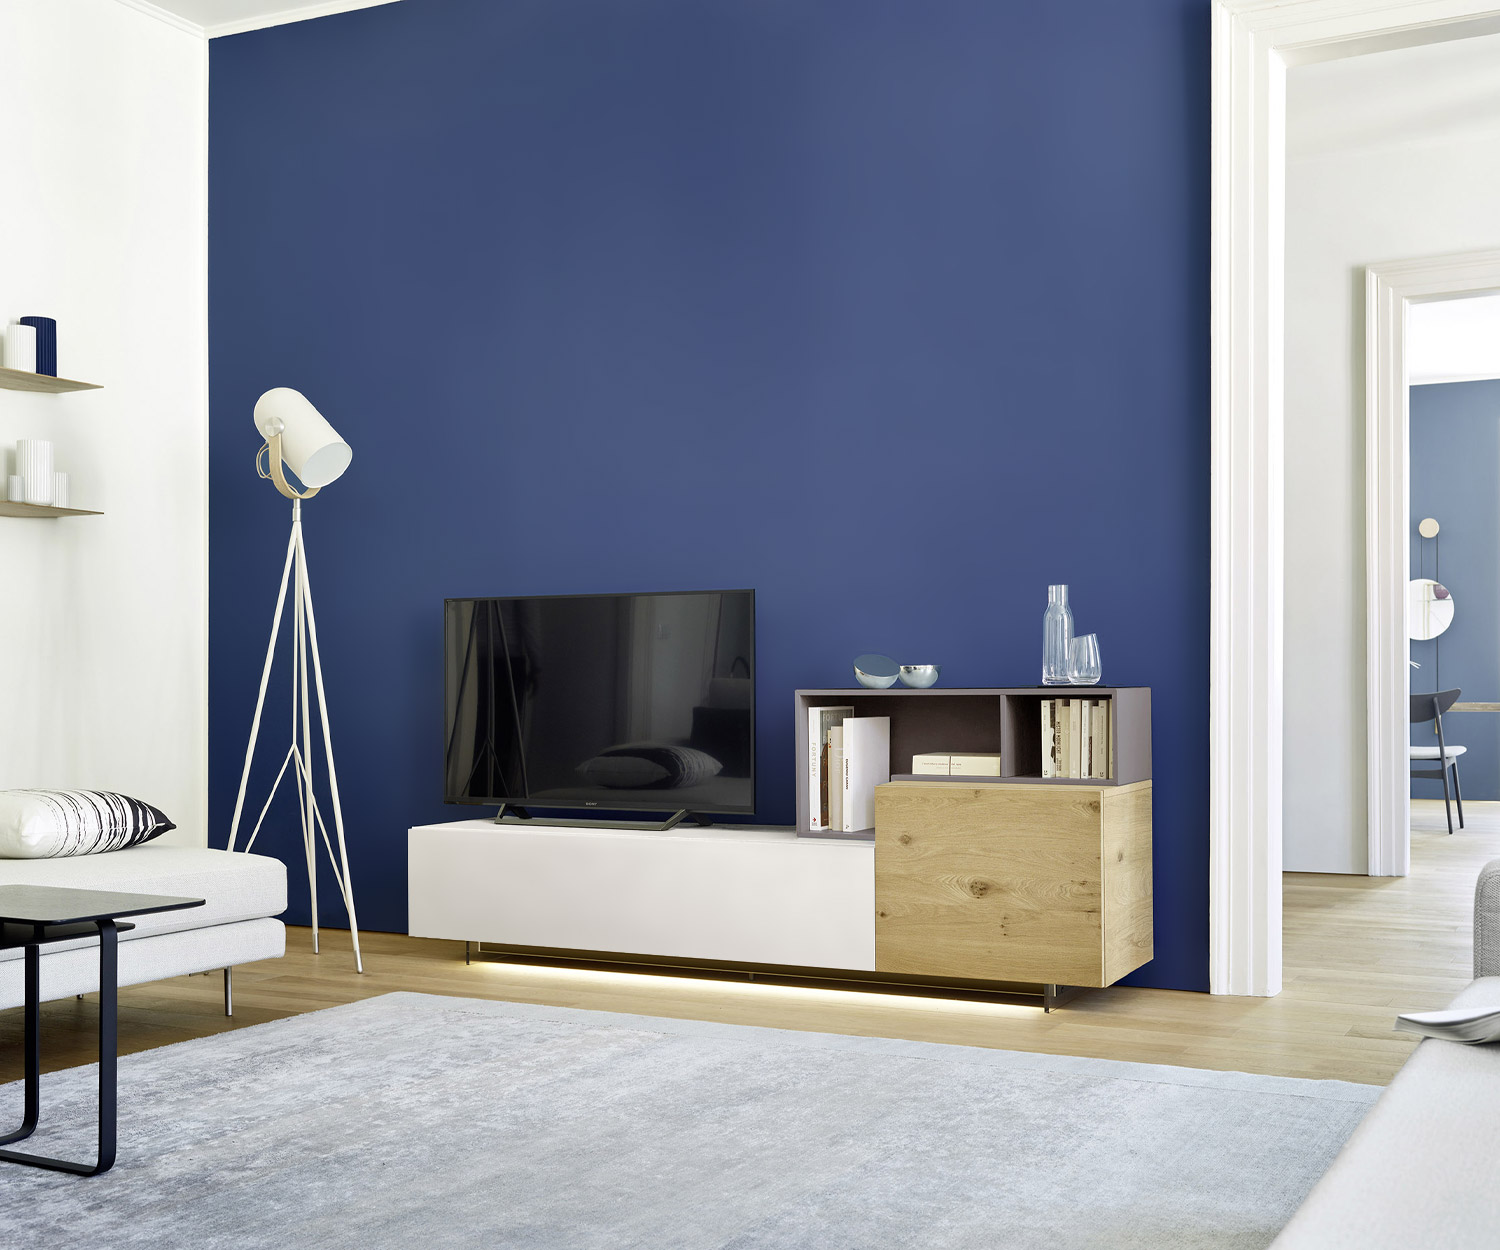 Exklusive Design TV Wohnwand Livitalia C09 für kleine Wohnzimmer Eiche Hell Weiß Matt schwebender Effekt